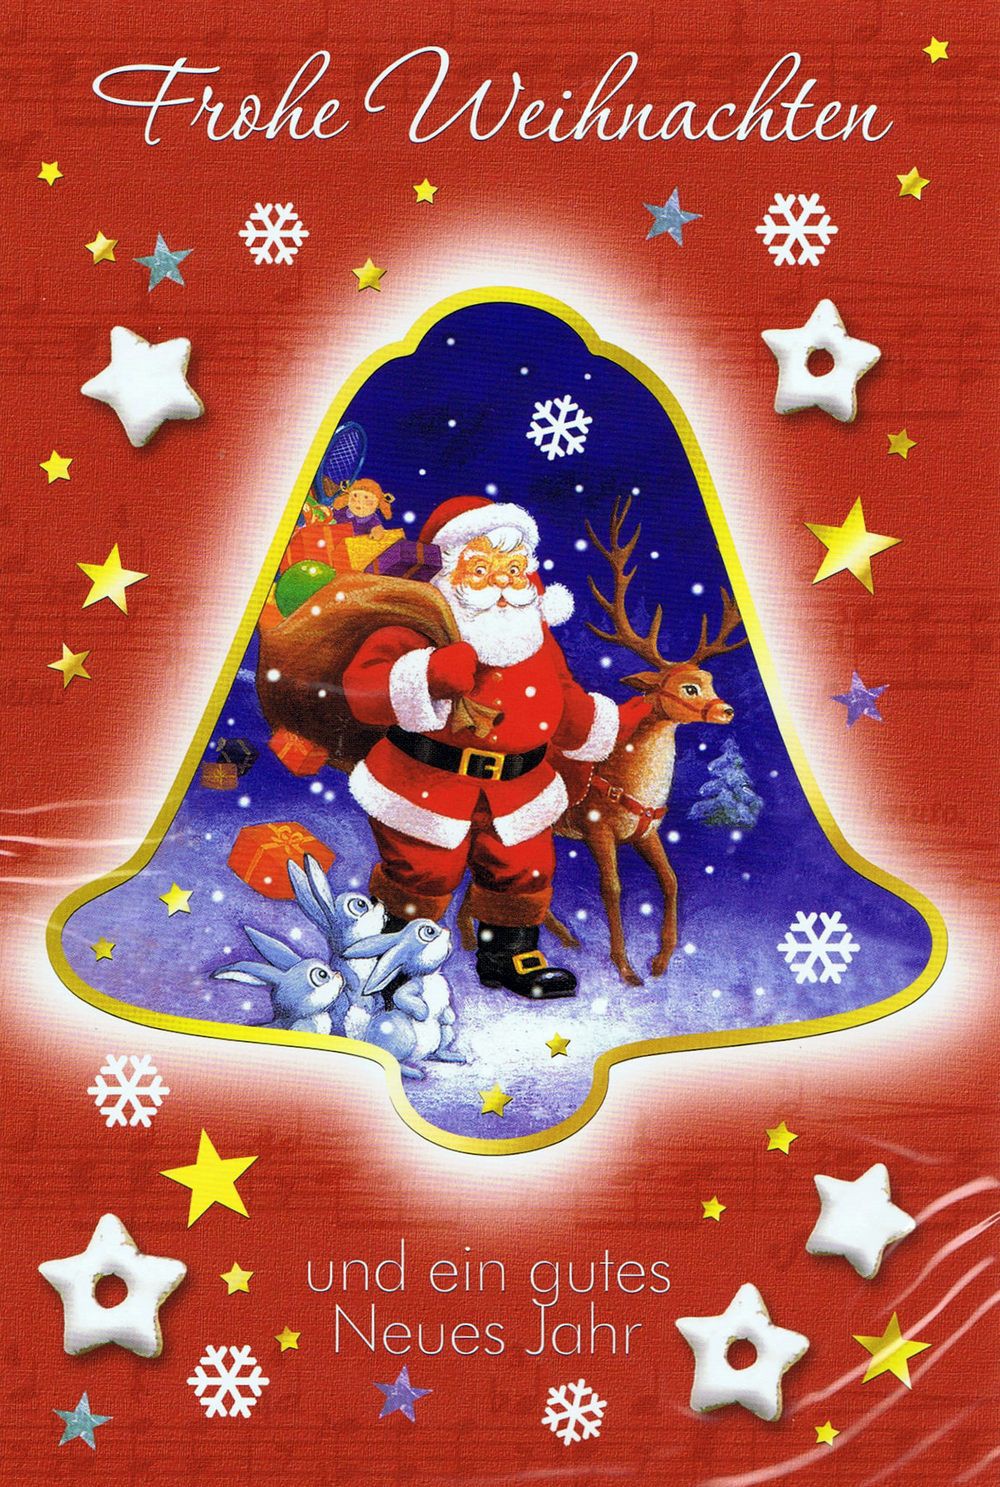 Weihnachtskarte - Weihnachtsglocke mit Weihnachtsmann